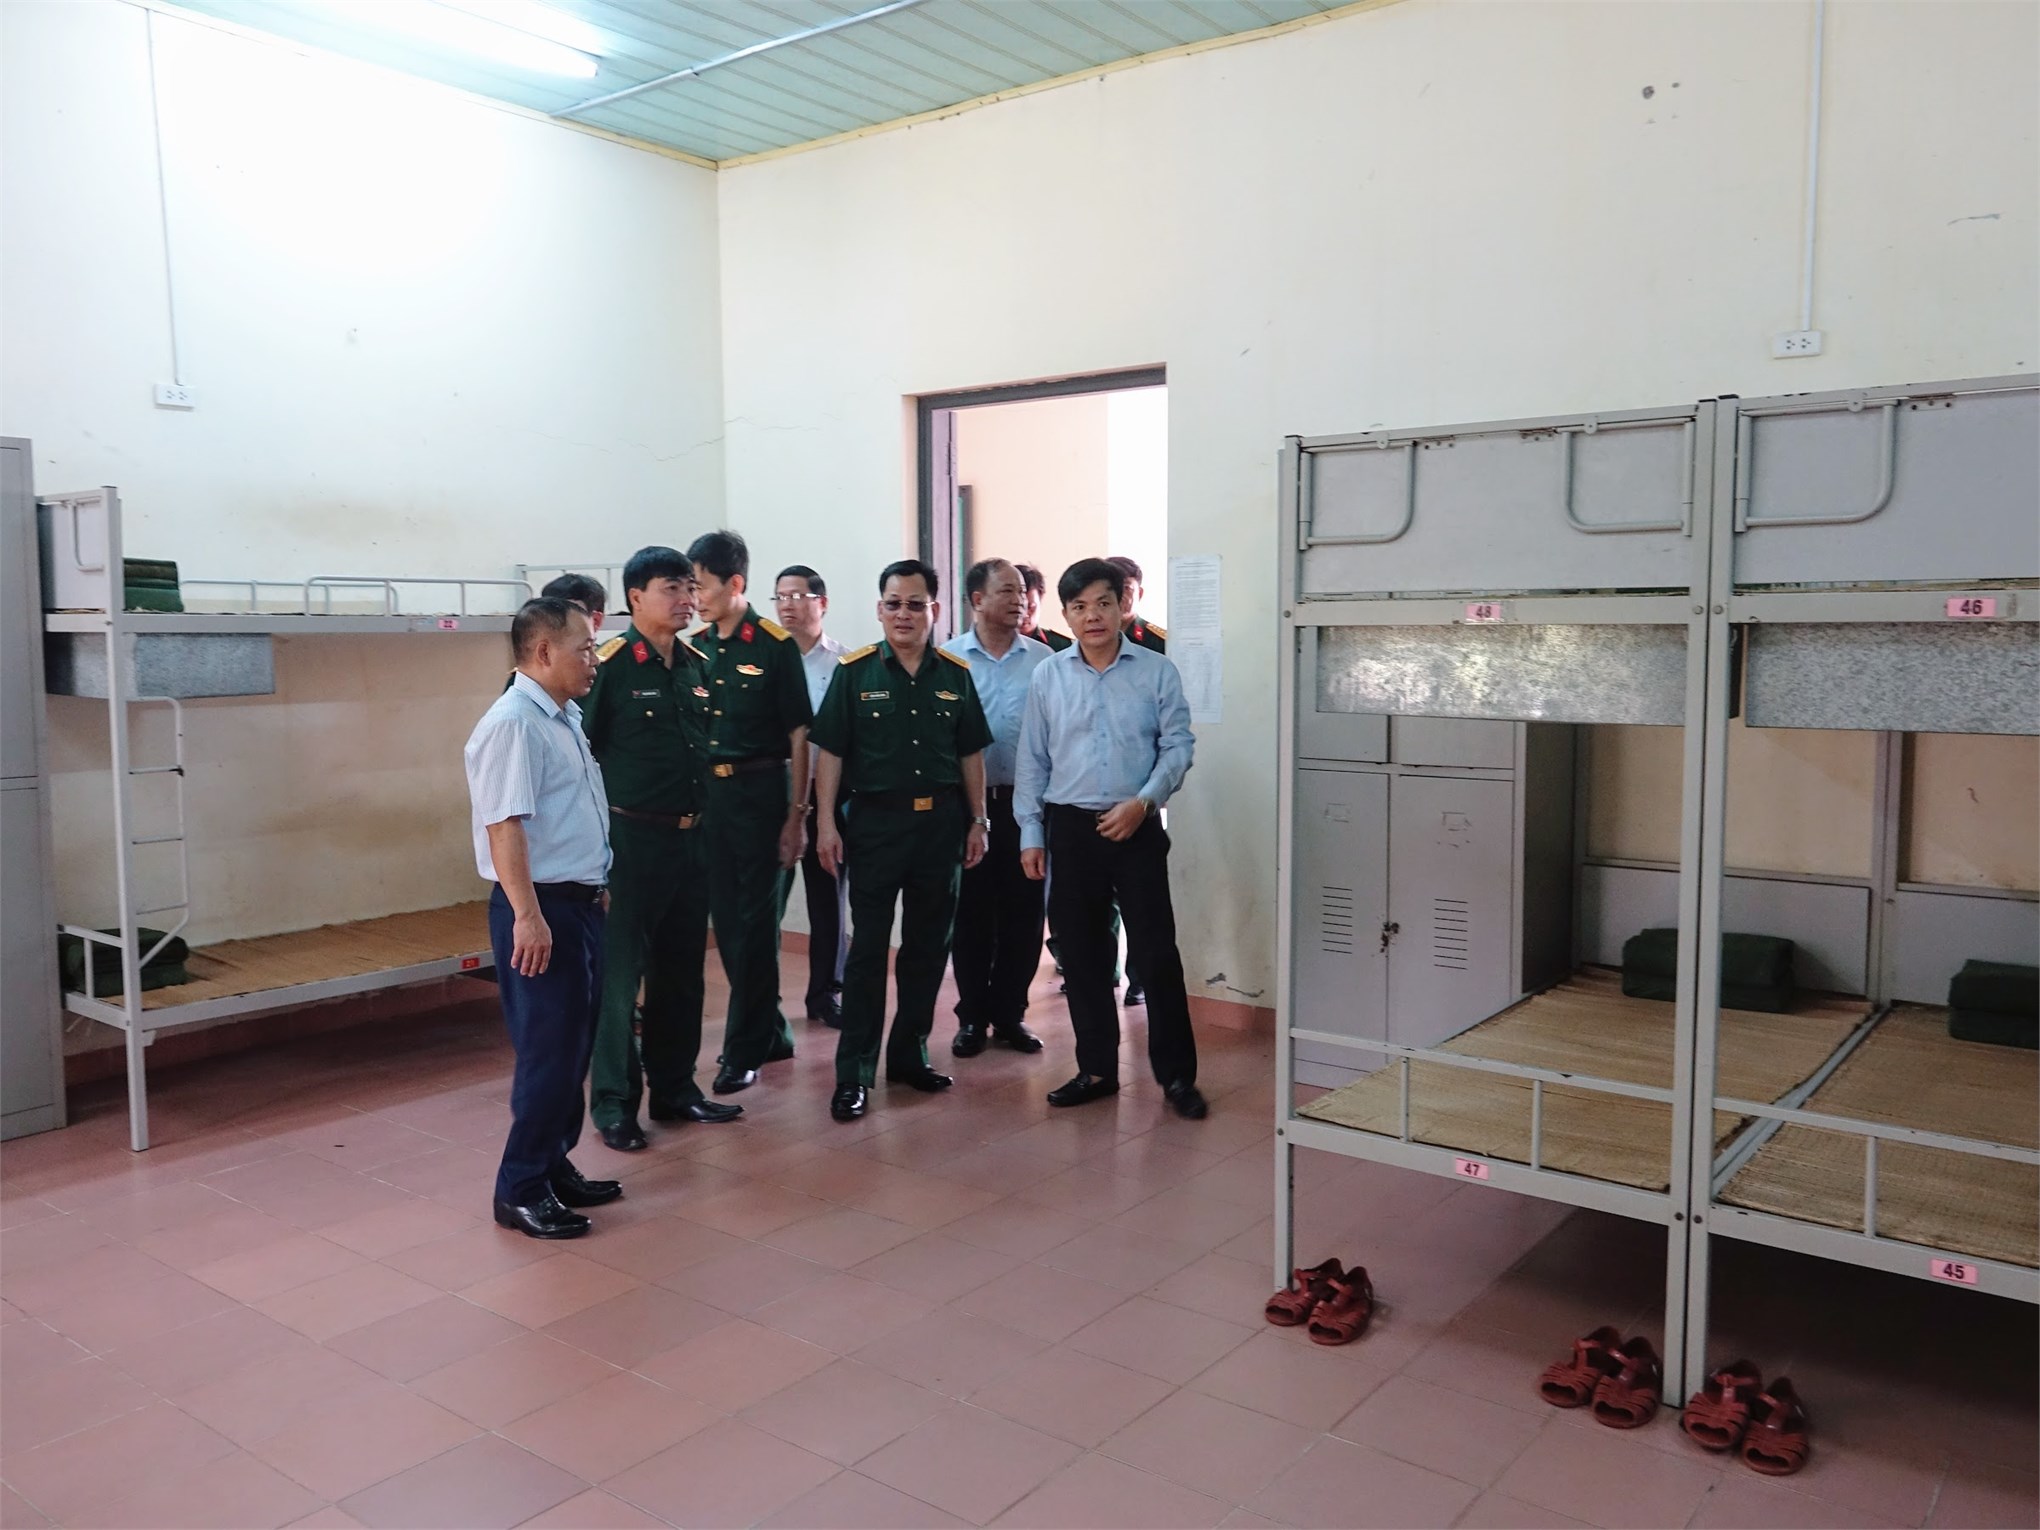 Trung tâm Giáo dục quốc phòng và an ninh Trường Đại học Công nghiệp Hà Nội hoàn thành xuất sắc nhiệm vụ trong thực hiện nhiệm vụ giáo dục quốc phòng, an ninh cho học sinh, sinh viên